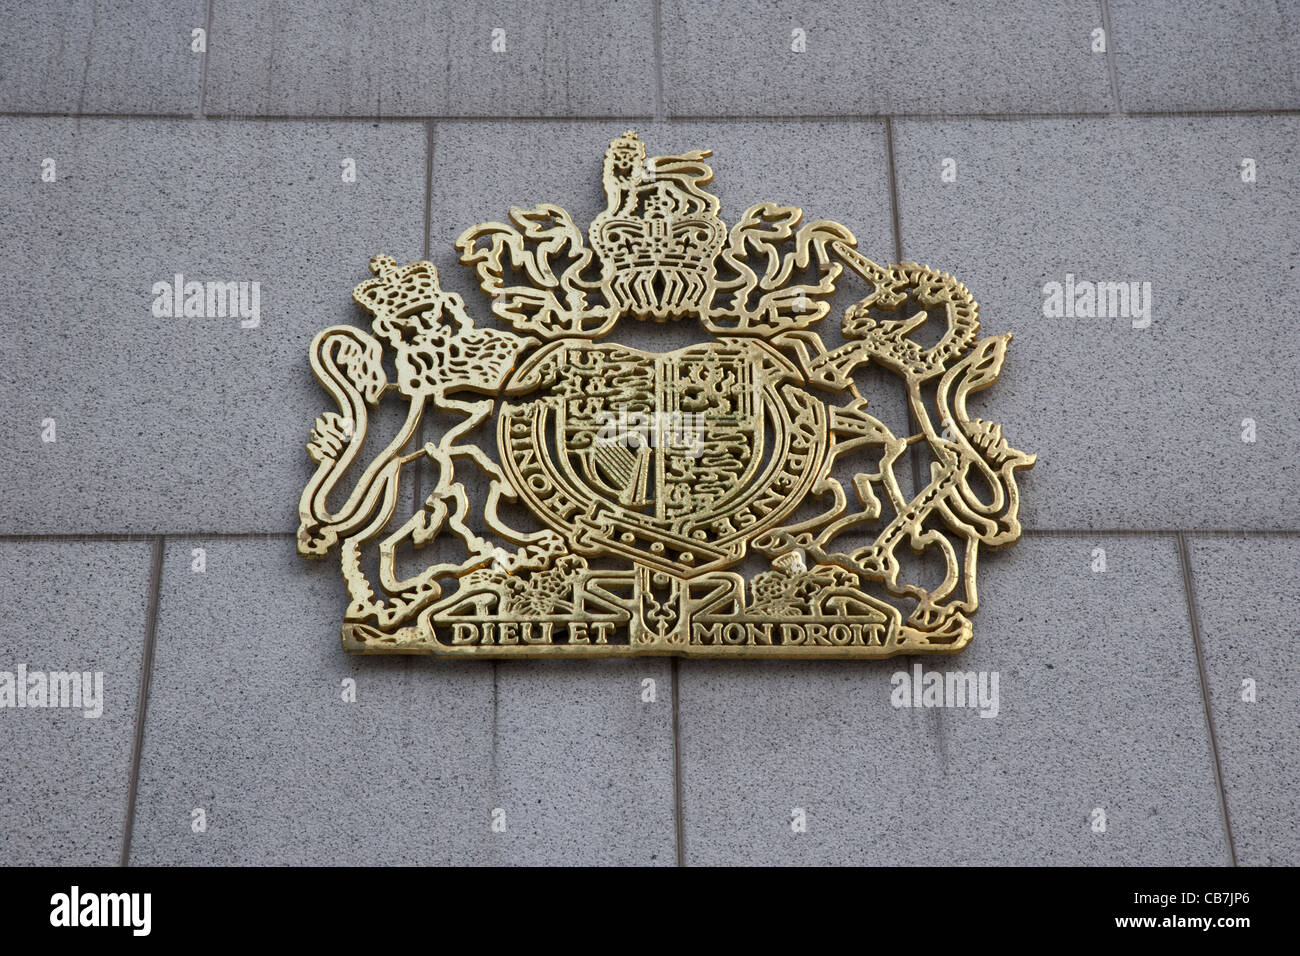 Stemma reale del regno unito sulla parete del consolato britannico di Hong Kong Island, RAS di Hong Kong, Cina Foto Stock